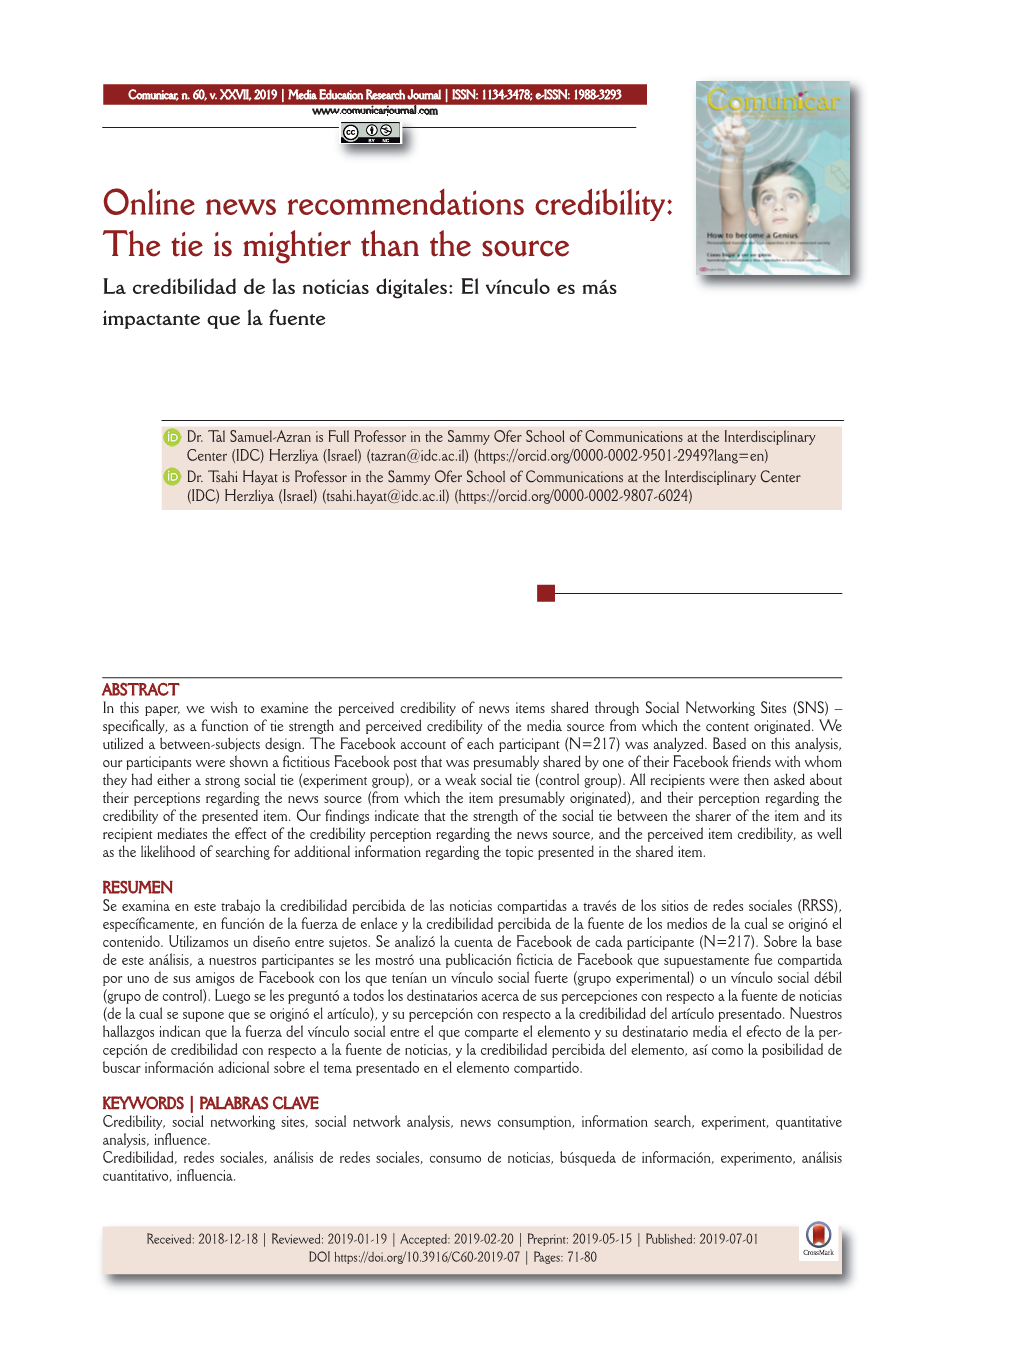 Online News Recommendations Credibility: the Tie Is Mightier Than the Source La Credibilidad De Las Noticias Digitales: El Vínculo Es Más Impactante Que La Fuente